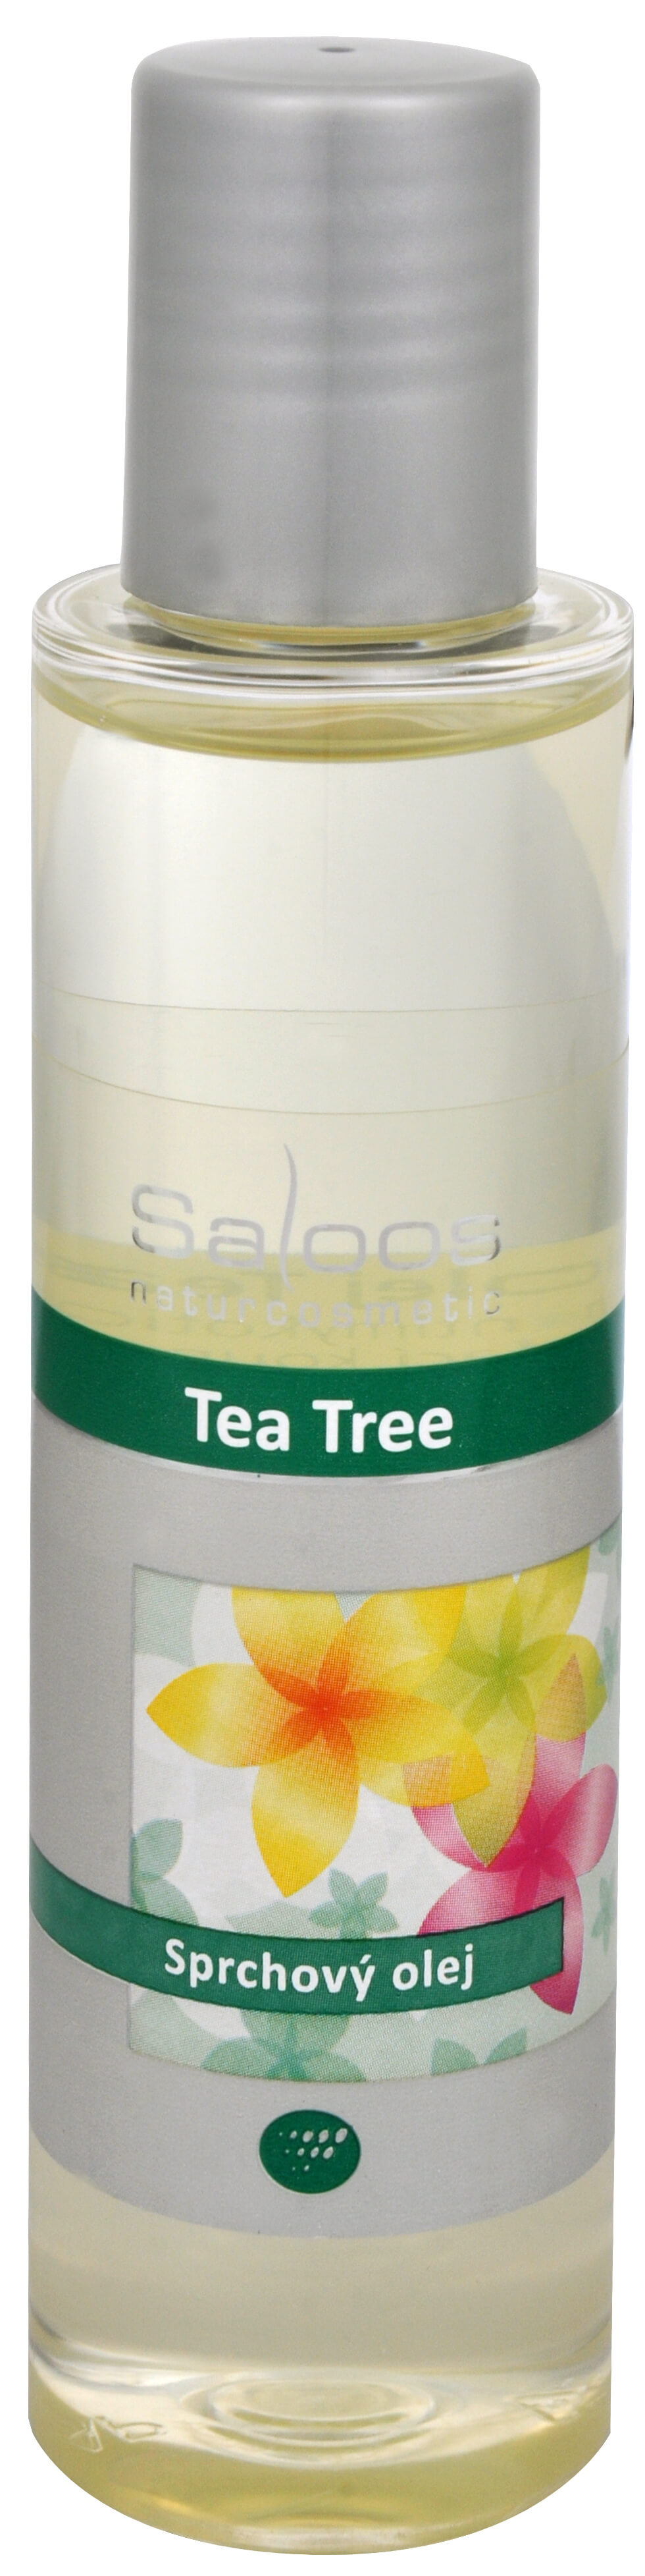 Saloos Sprchový olej - Tea Tree 125 ml + 2 mesiace na vrátenie tovaru